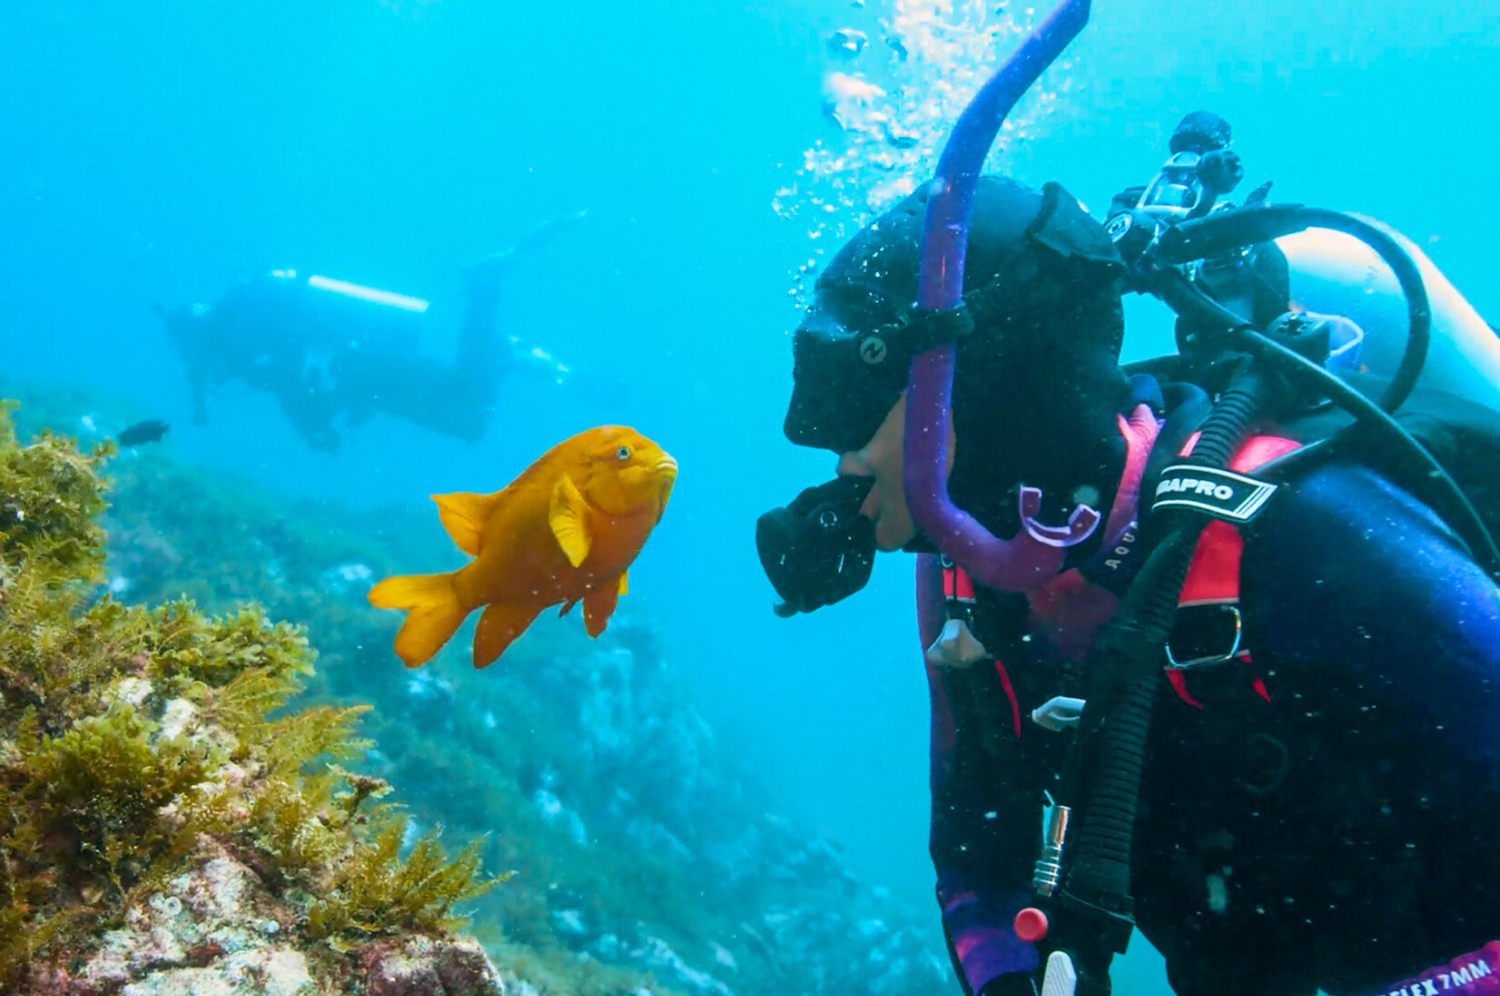 Image of a scuba diver and Garibaldi fish.